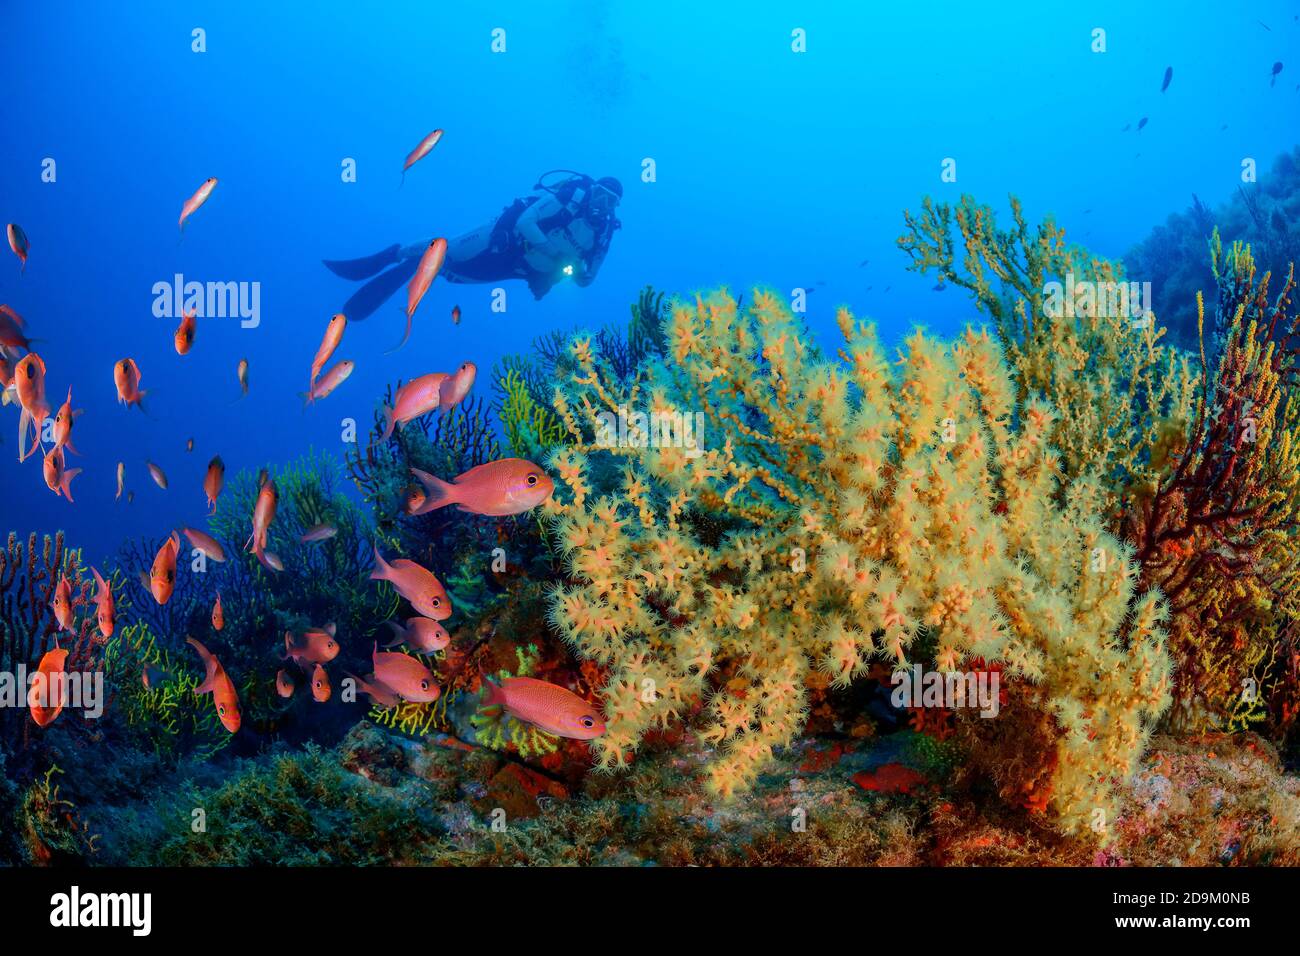 Shrub coral with Mediterranean anthias and diver, Savalia savaglia with Anthias anthia, Tamariu, Costa Brava, Spain, Mediterranean Anthiadinae Stock Photo